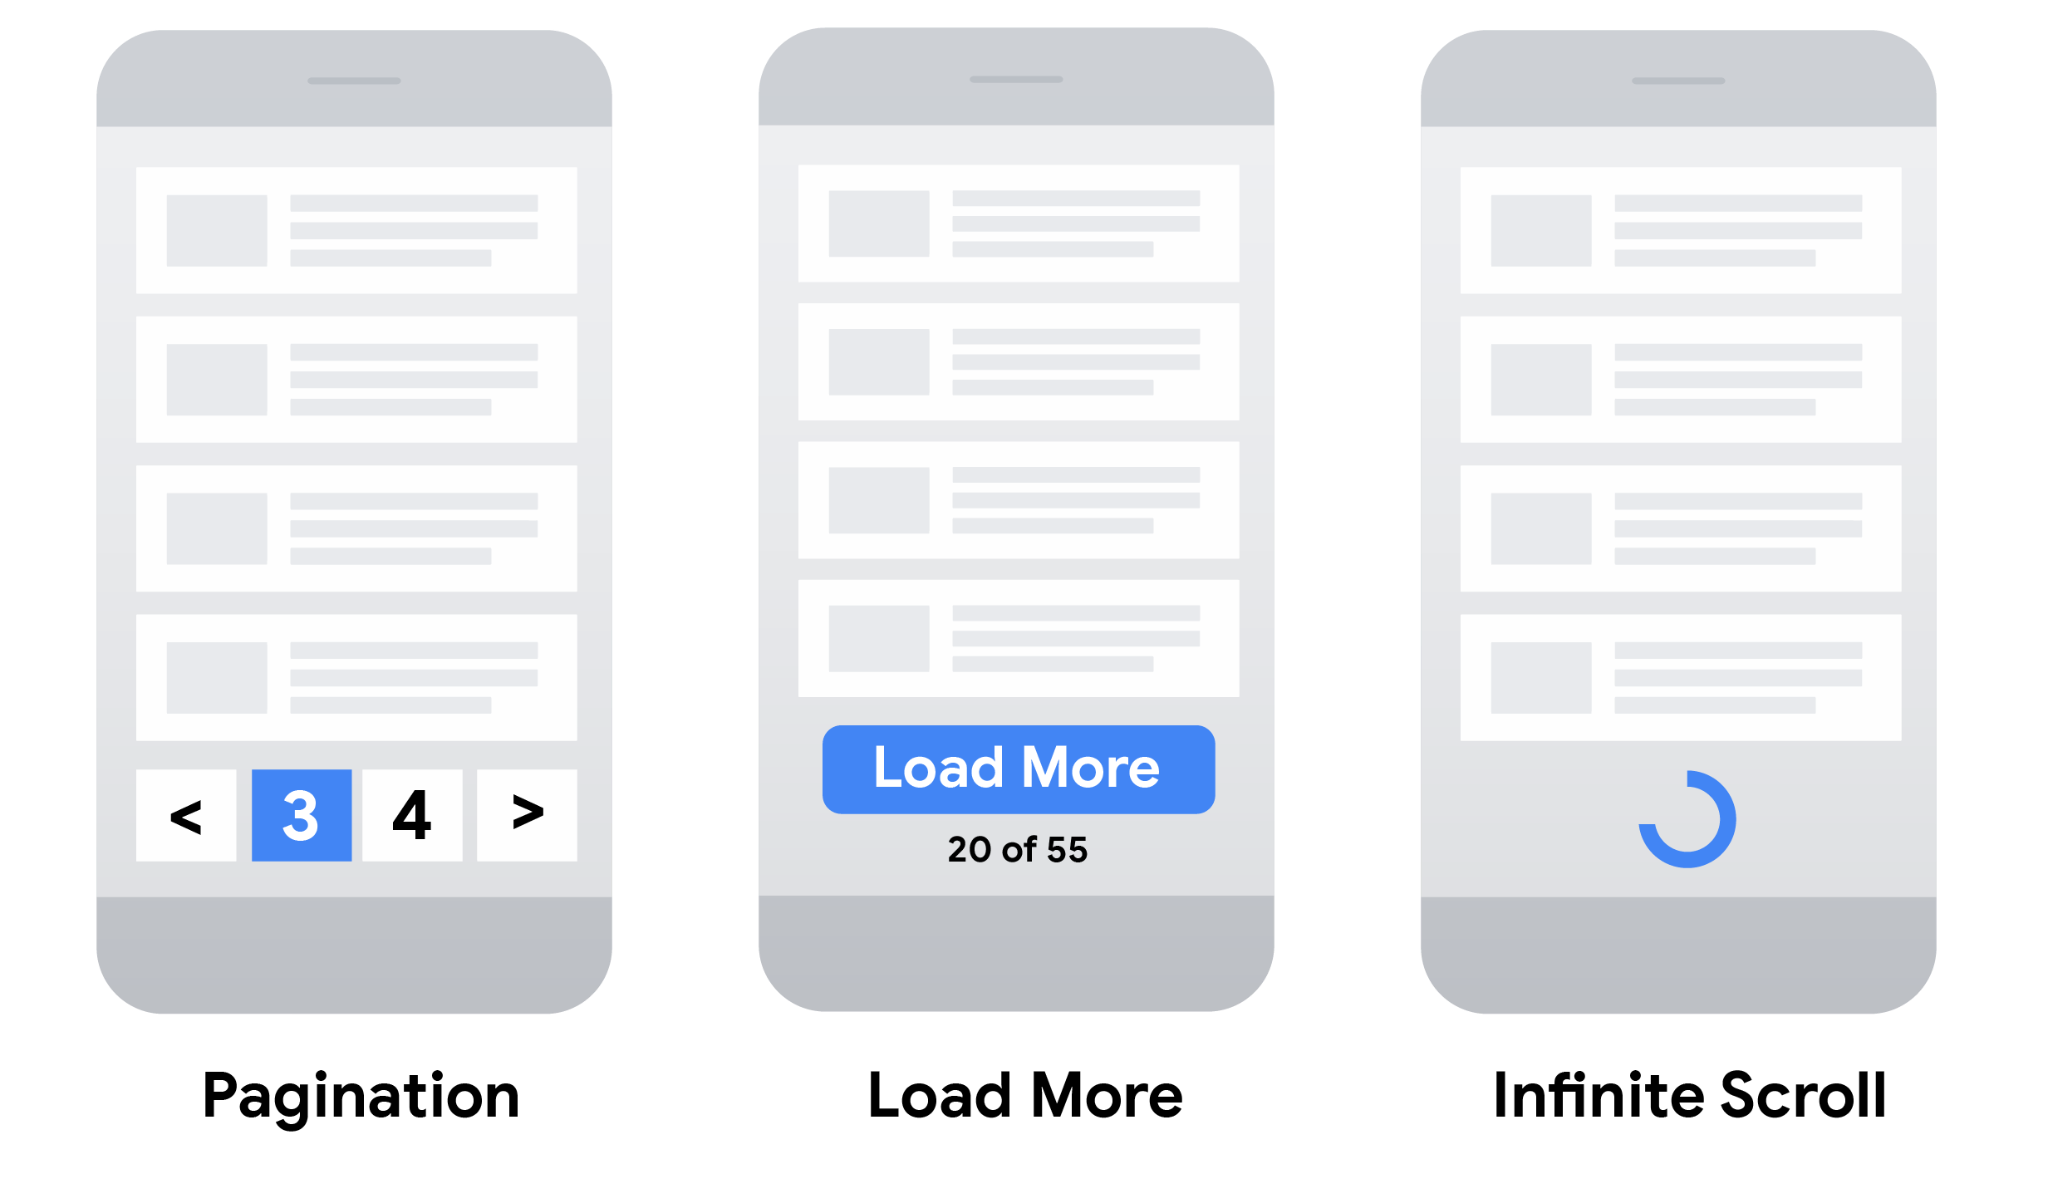 Modèles de pagination, d'utilisation du bouton "Plus" et de défilement infini pour les appareils mobiles